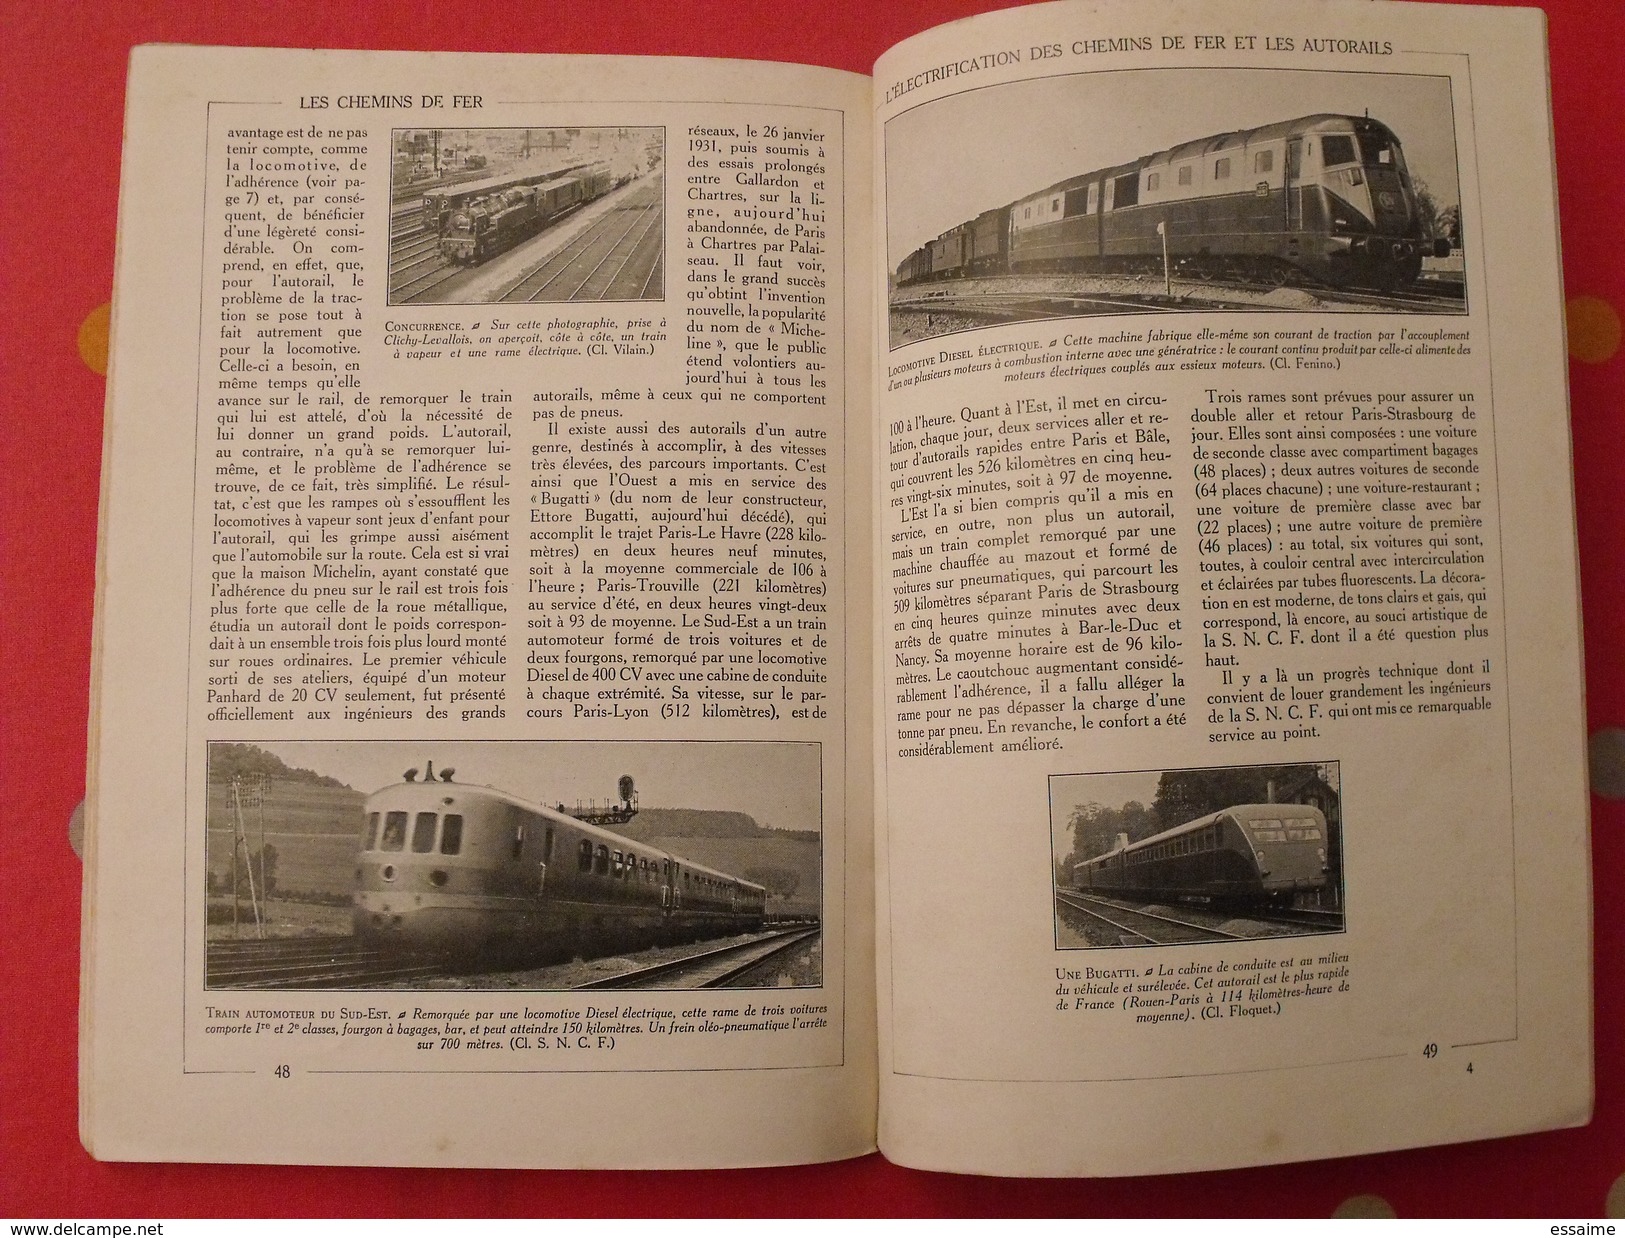 Les chemins de fer. encyclopédie par l'image. Hachette 1927. bien illustré